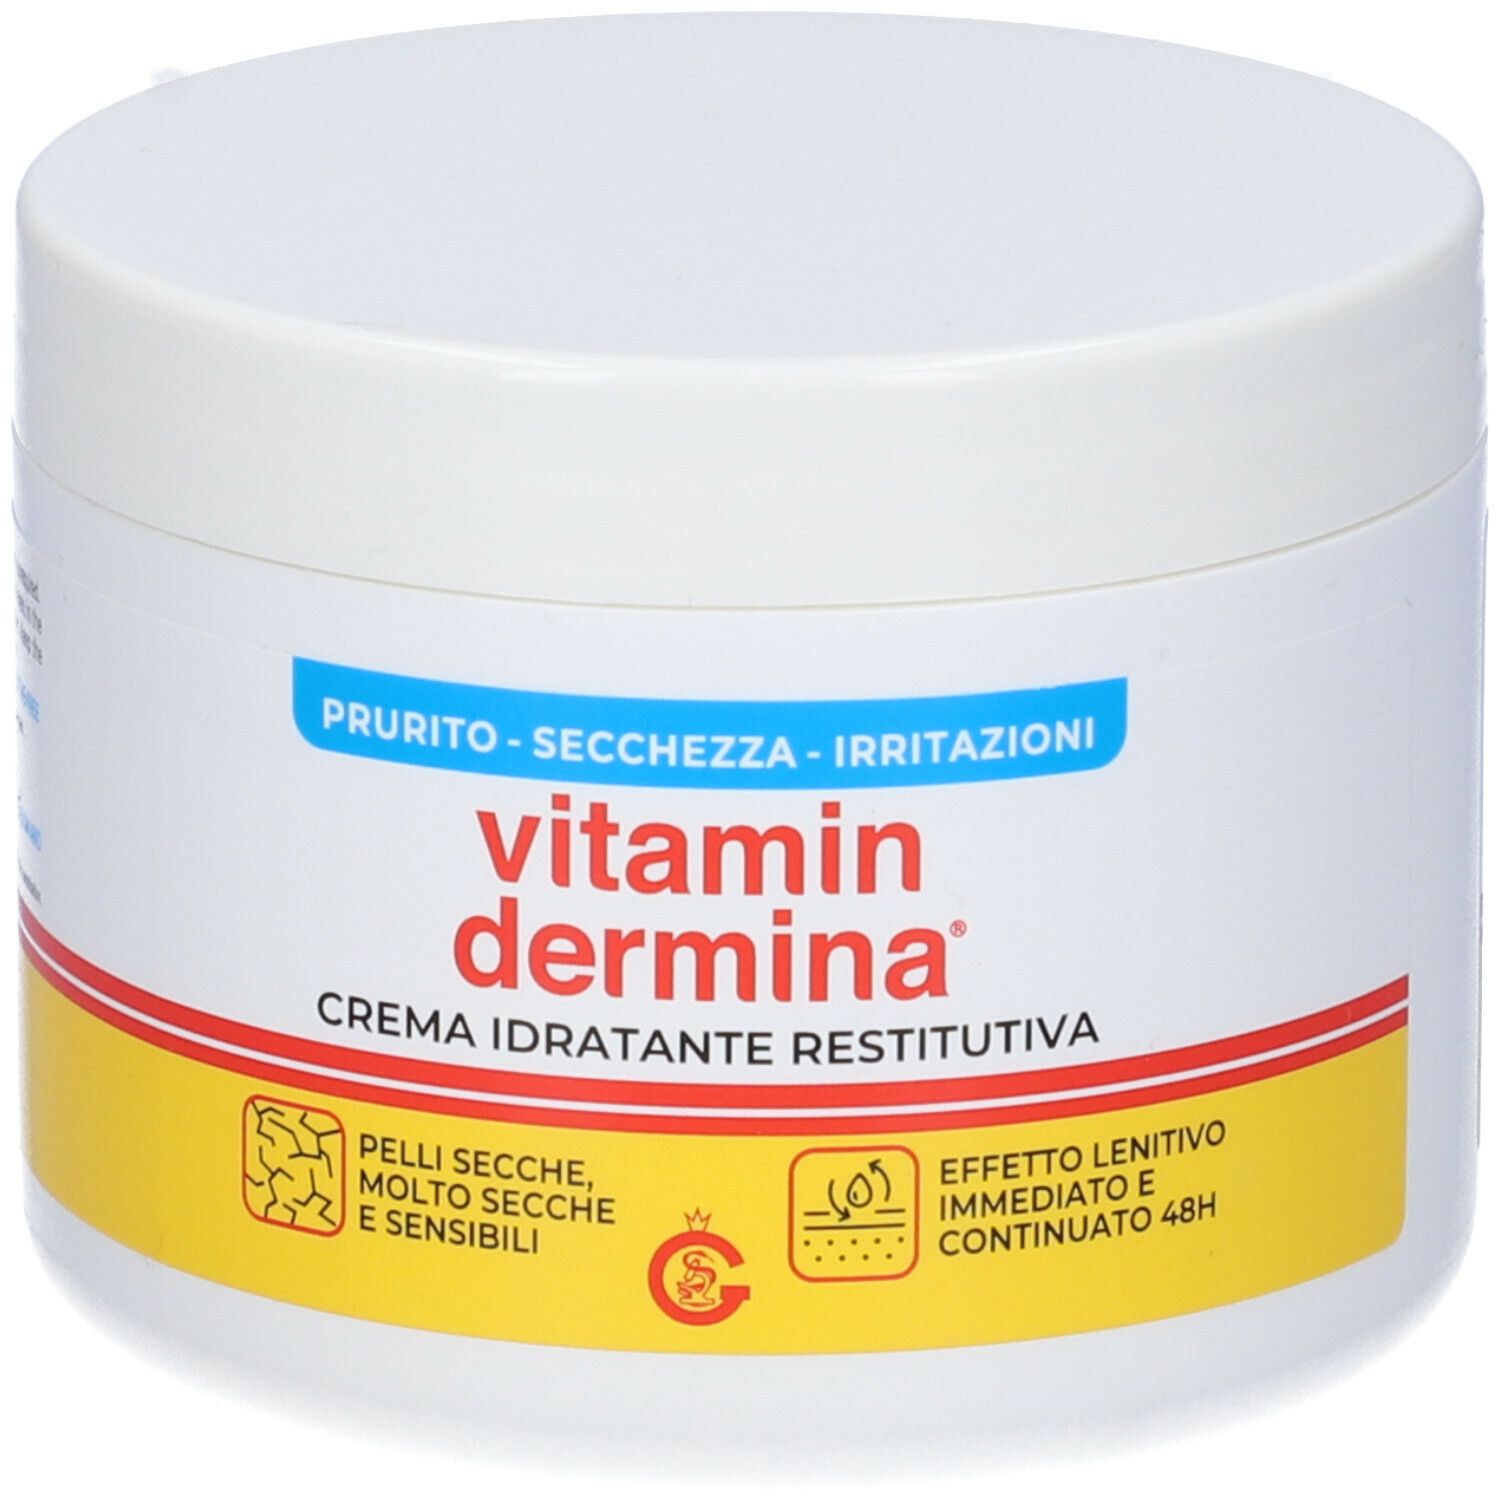 Image of Vitamin Dermina Crema Idratante Restitutiva